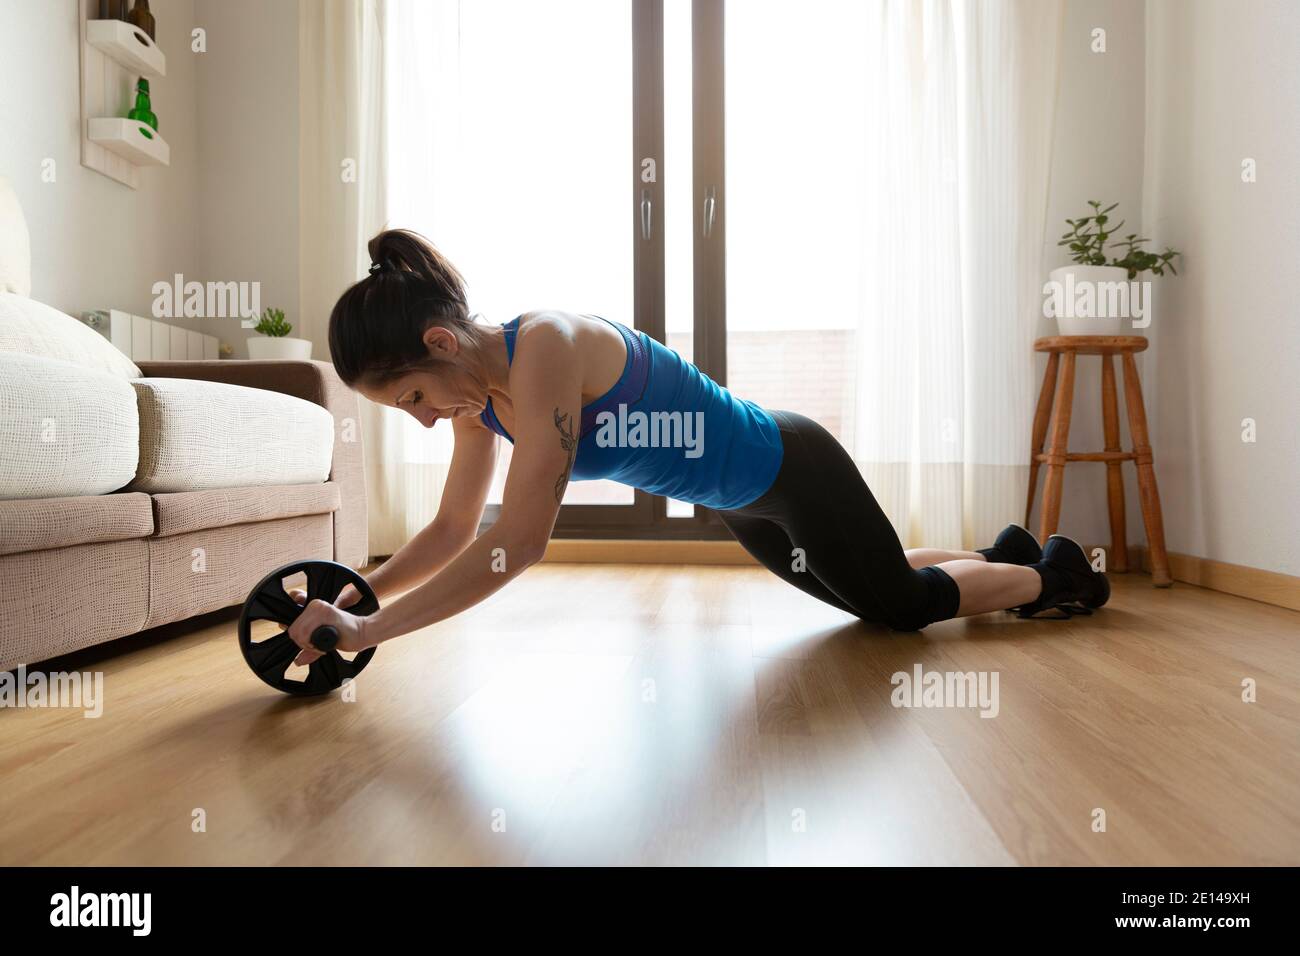 Femme renforçant son corps en utilisant la roue abdominale. Concept de sport à la maison. Espace pour le texte. Banque D'Images